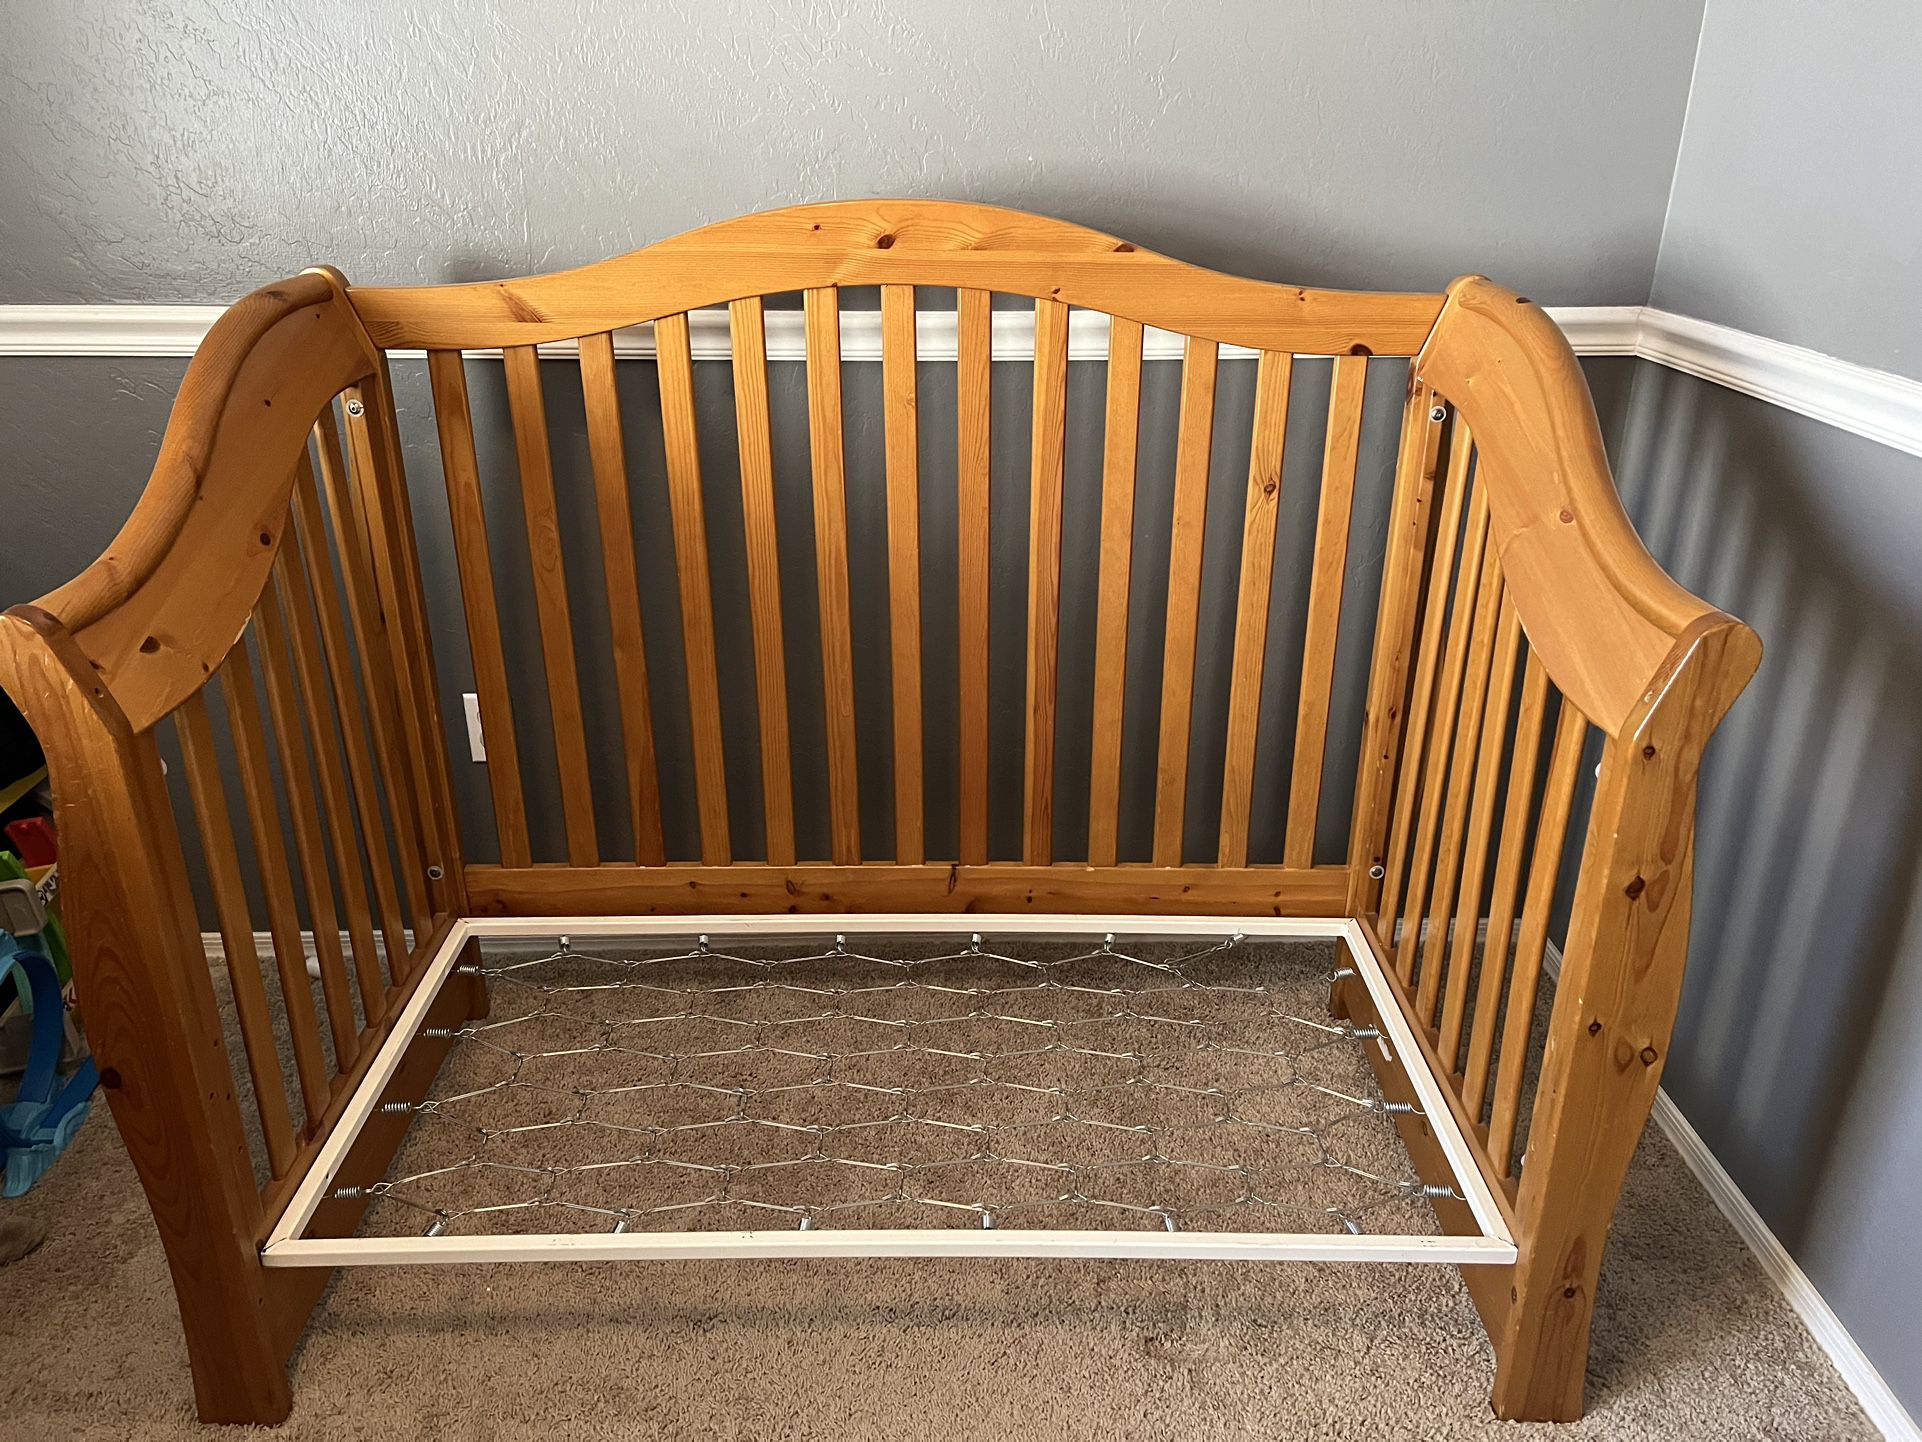 Crib To Toddler Bed